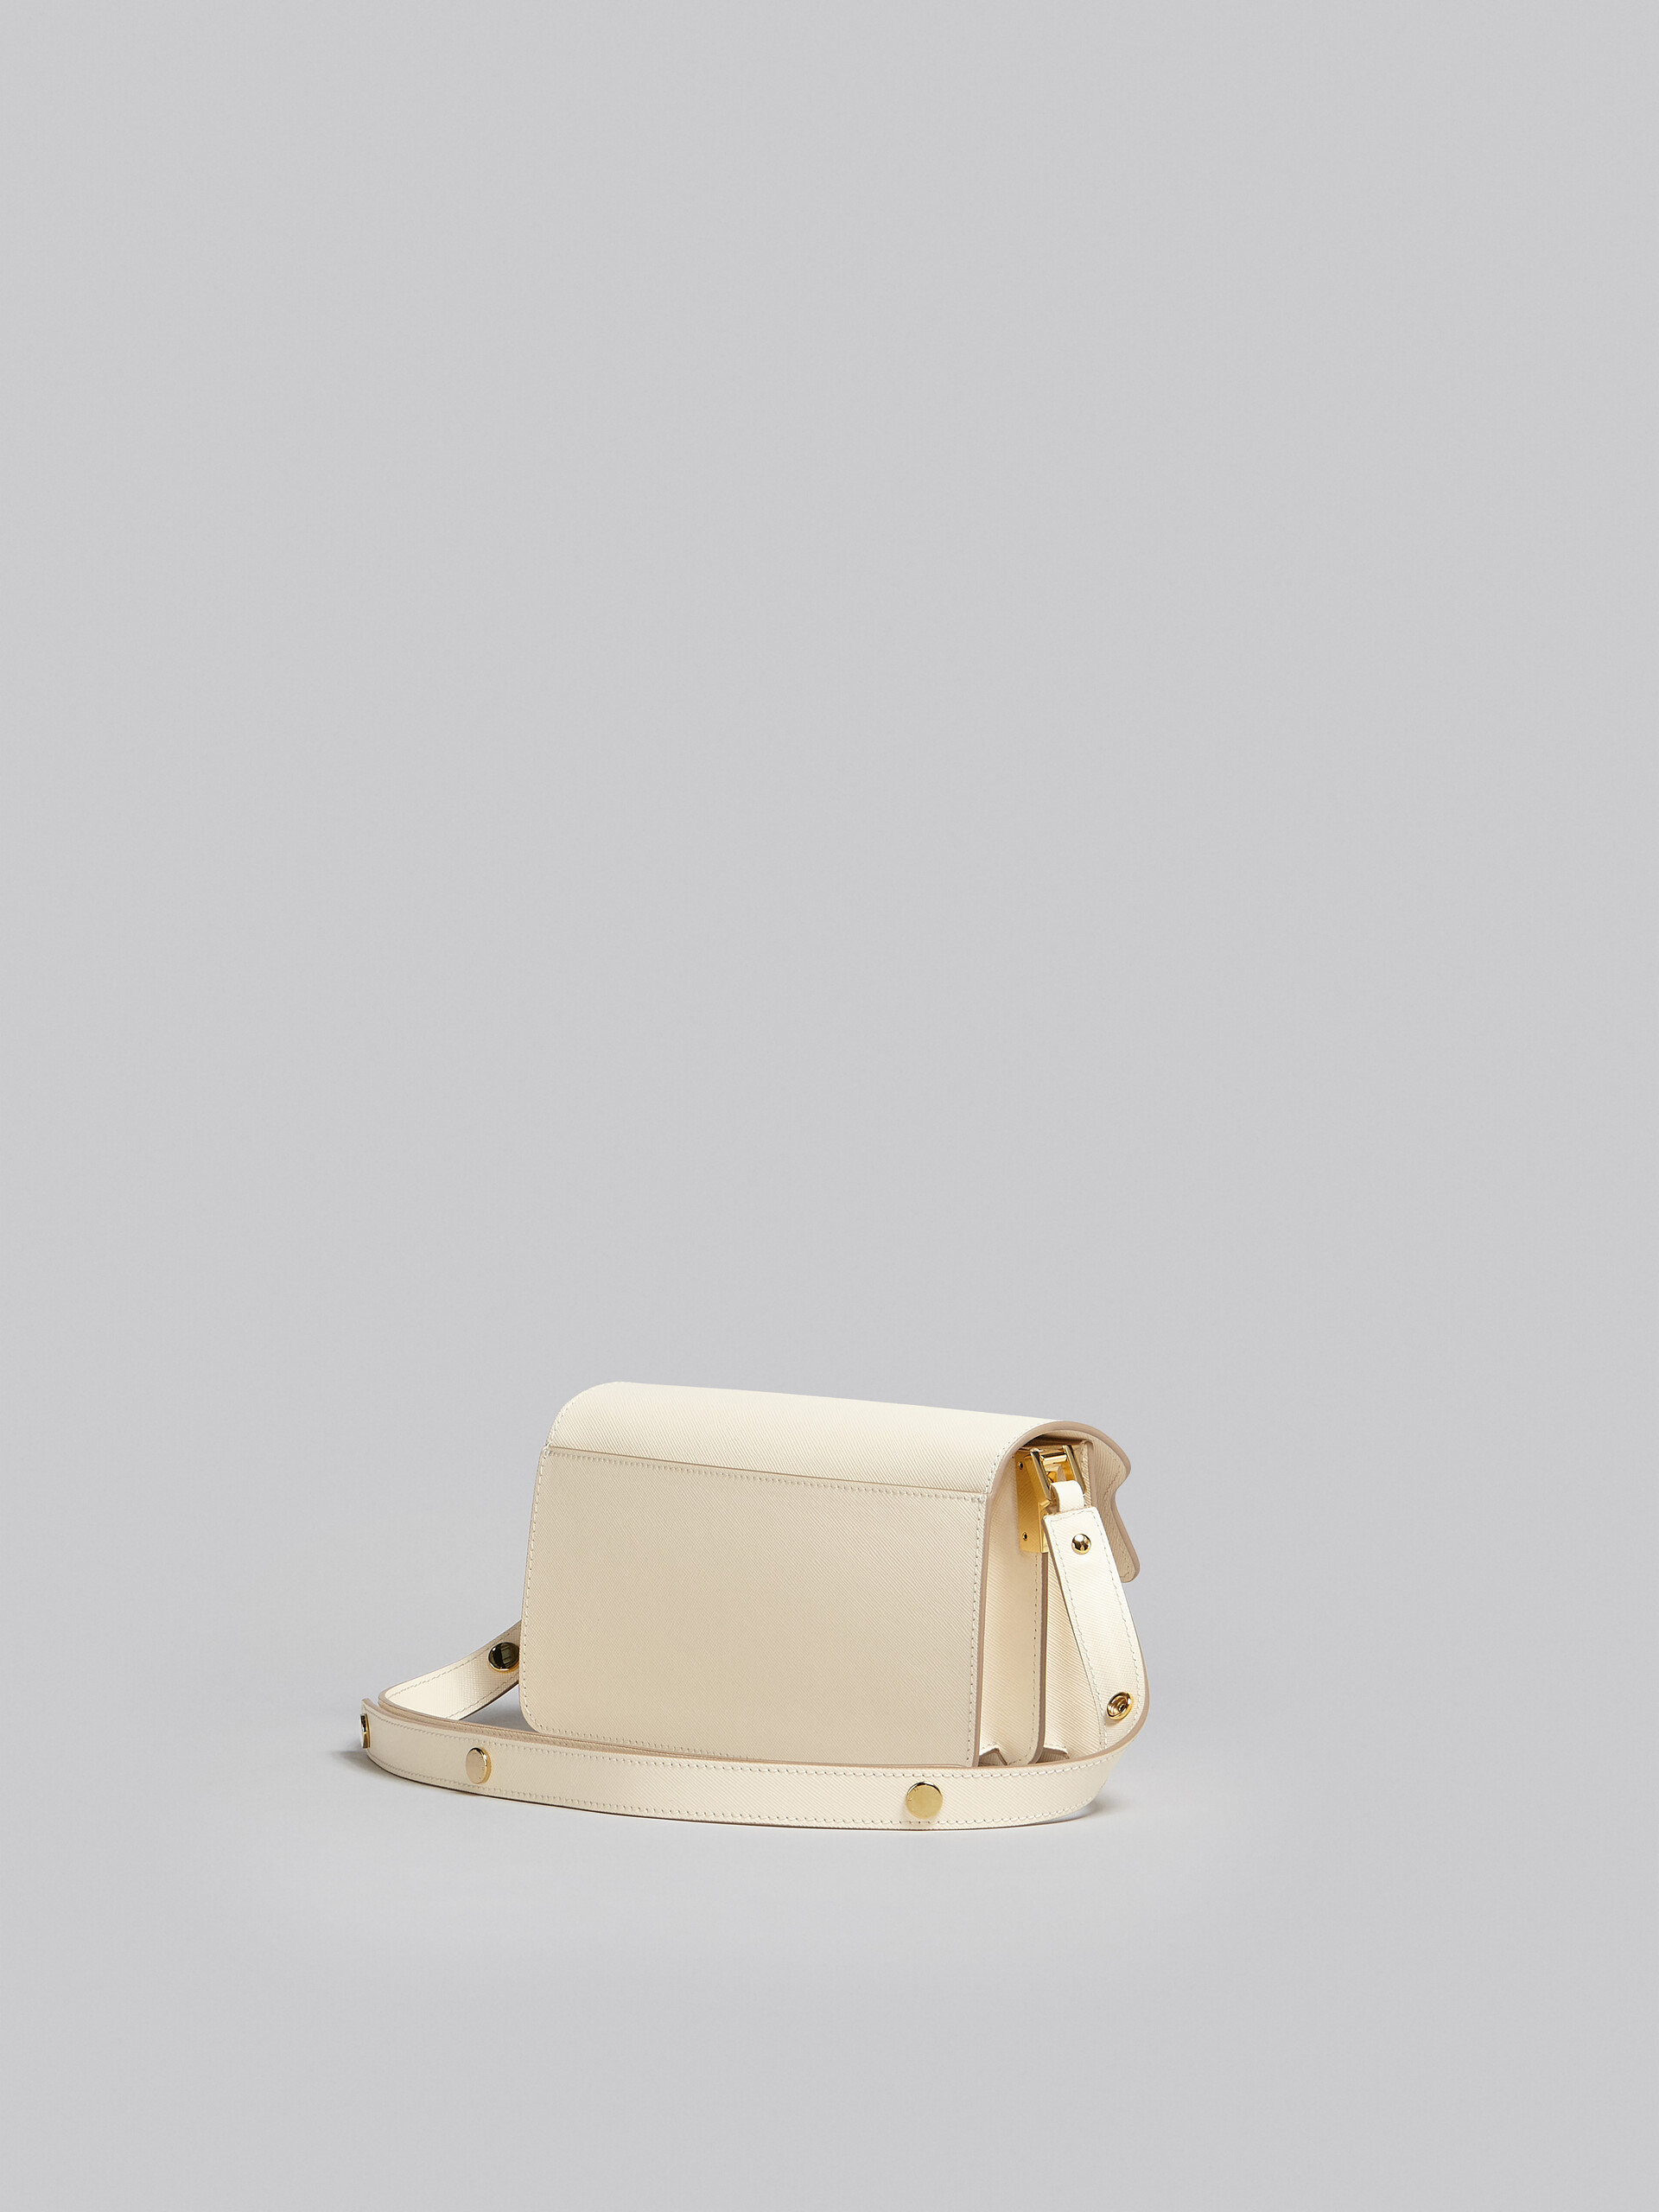 Sac Trunk horizontal en cuir Saffiano blanc - Sacs portés épaule - Image 3